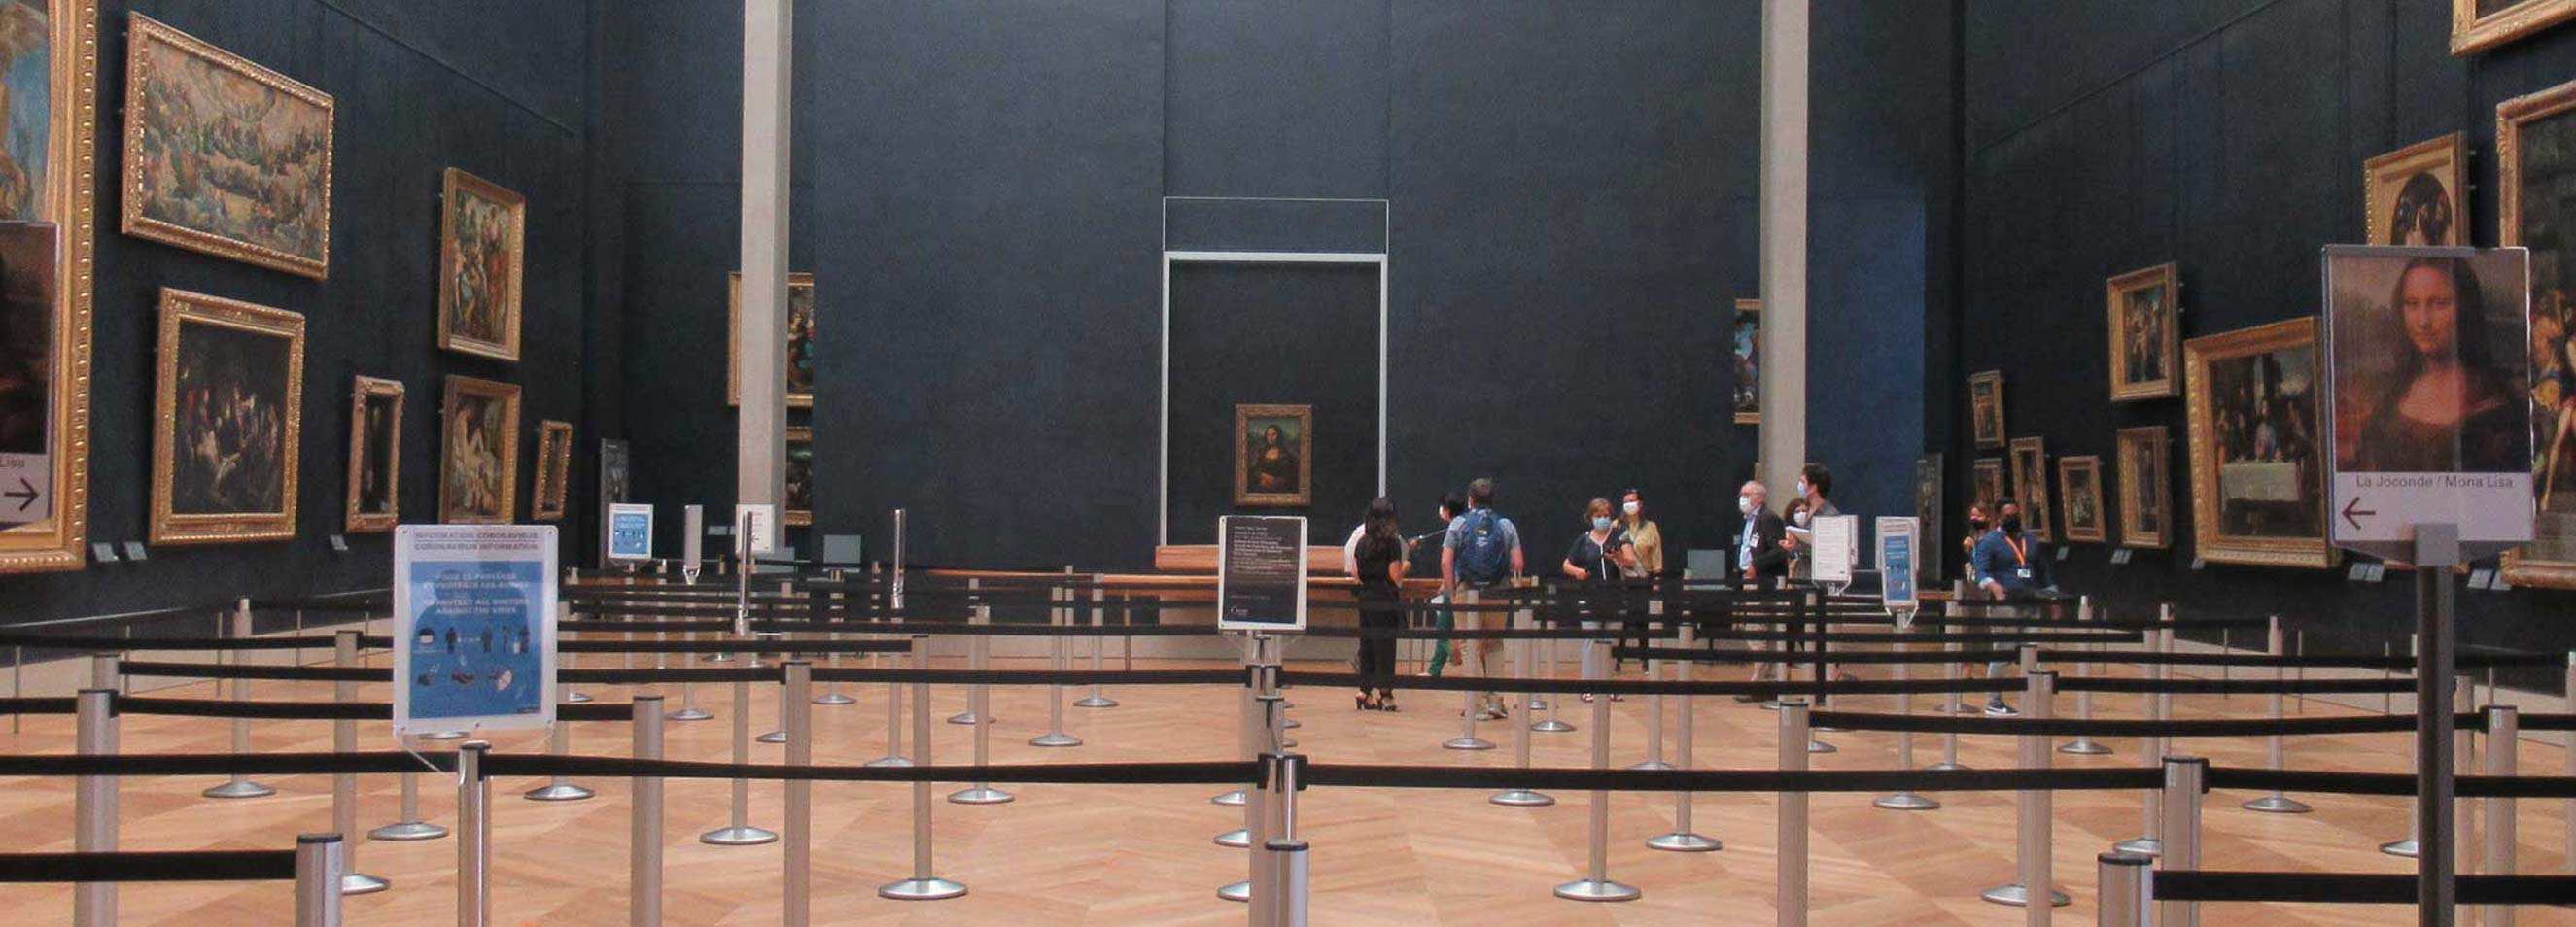 Ausstellungsraum im Museum Louvre mit Personenleitsystem